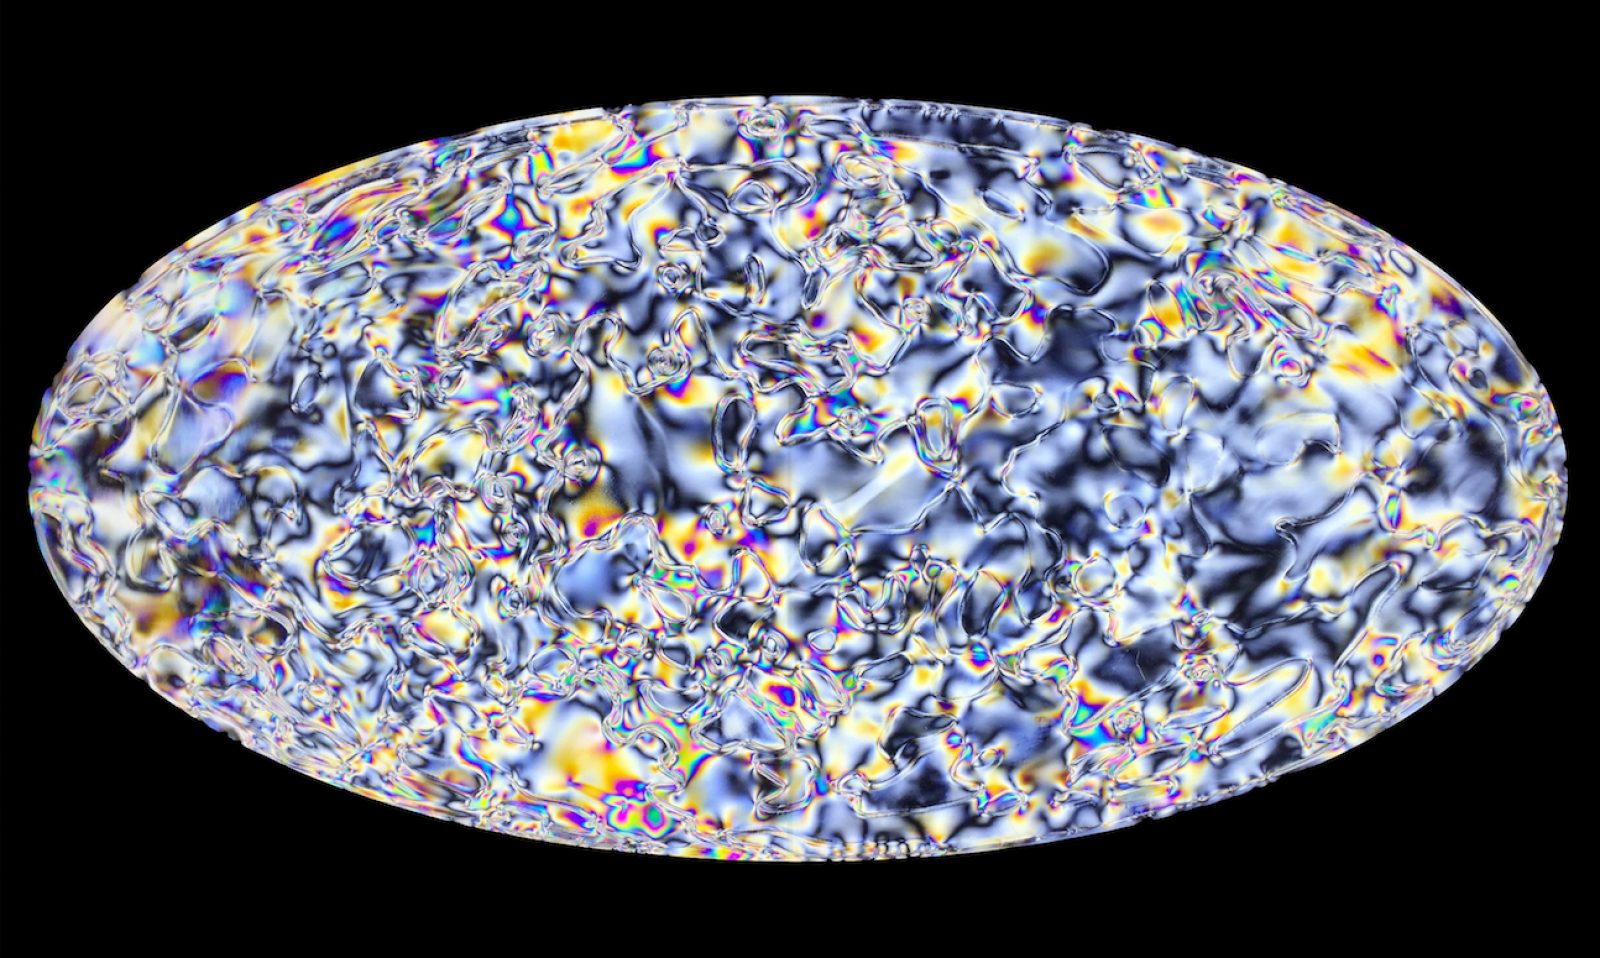 Anisotropía #7 – Big Bang, 2019